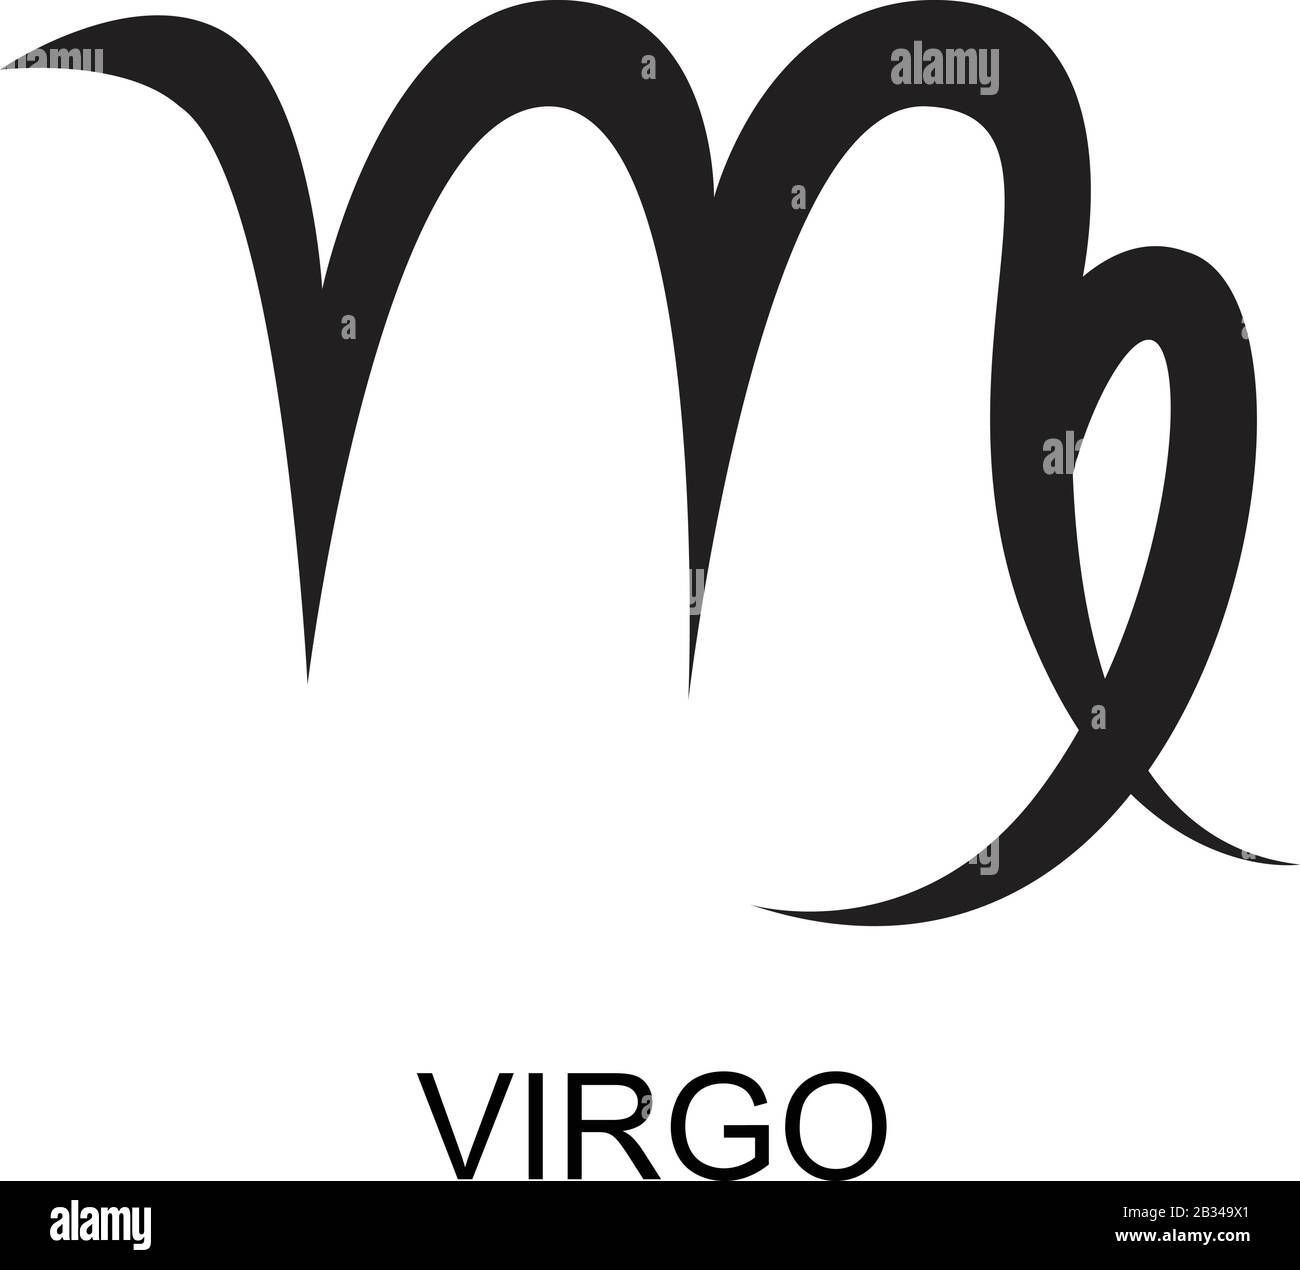 Vector illustration of greek virgo zodiac sign symbol Stock Vector ...